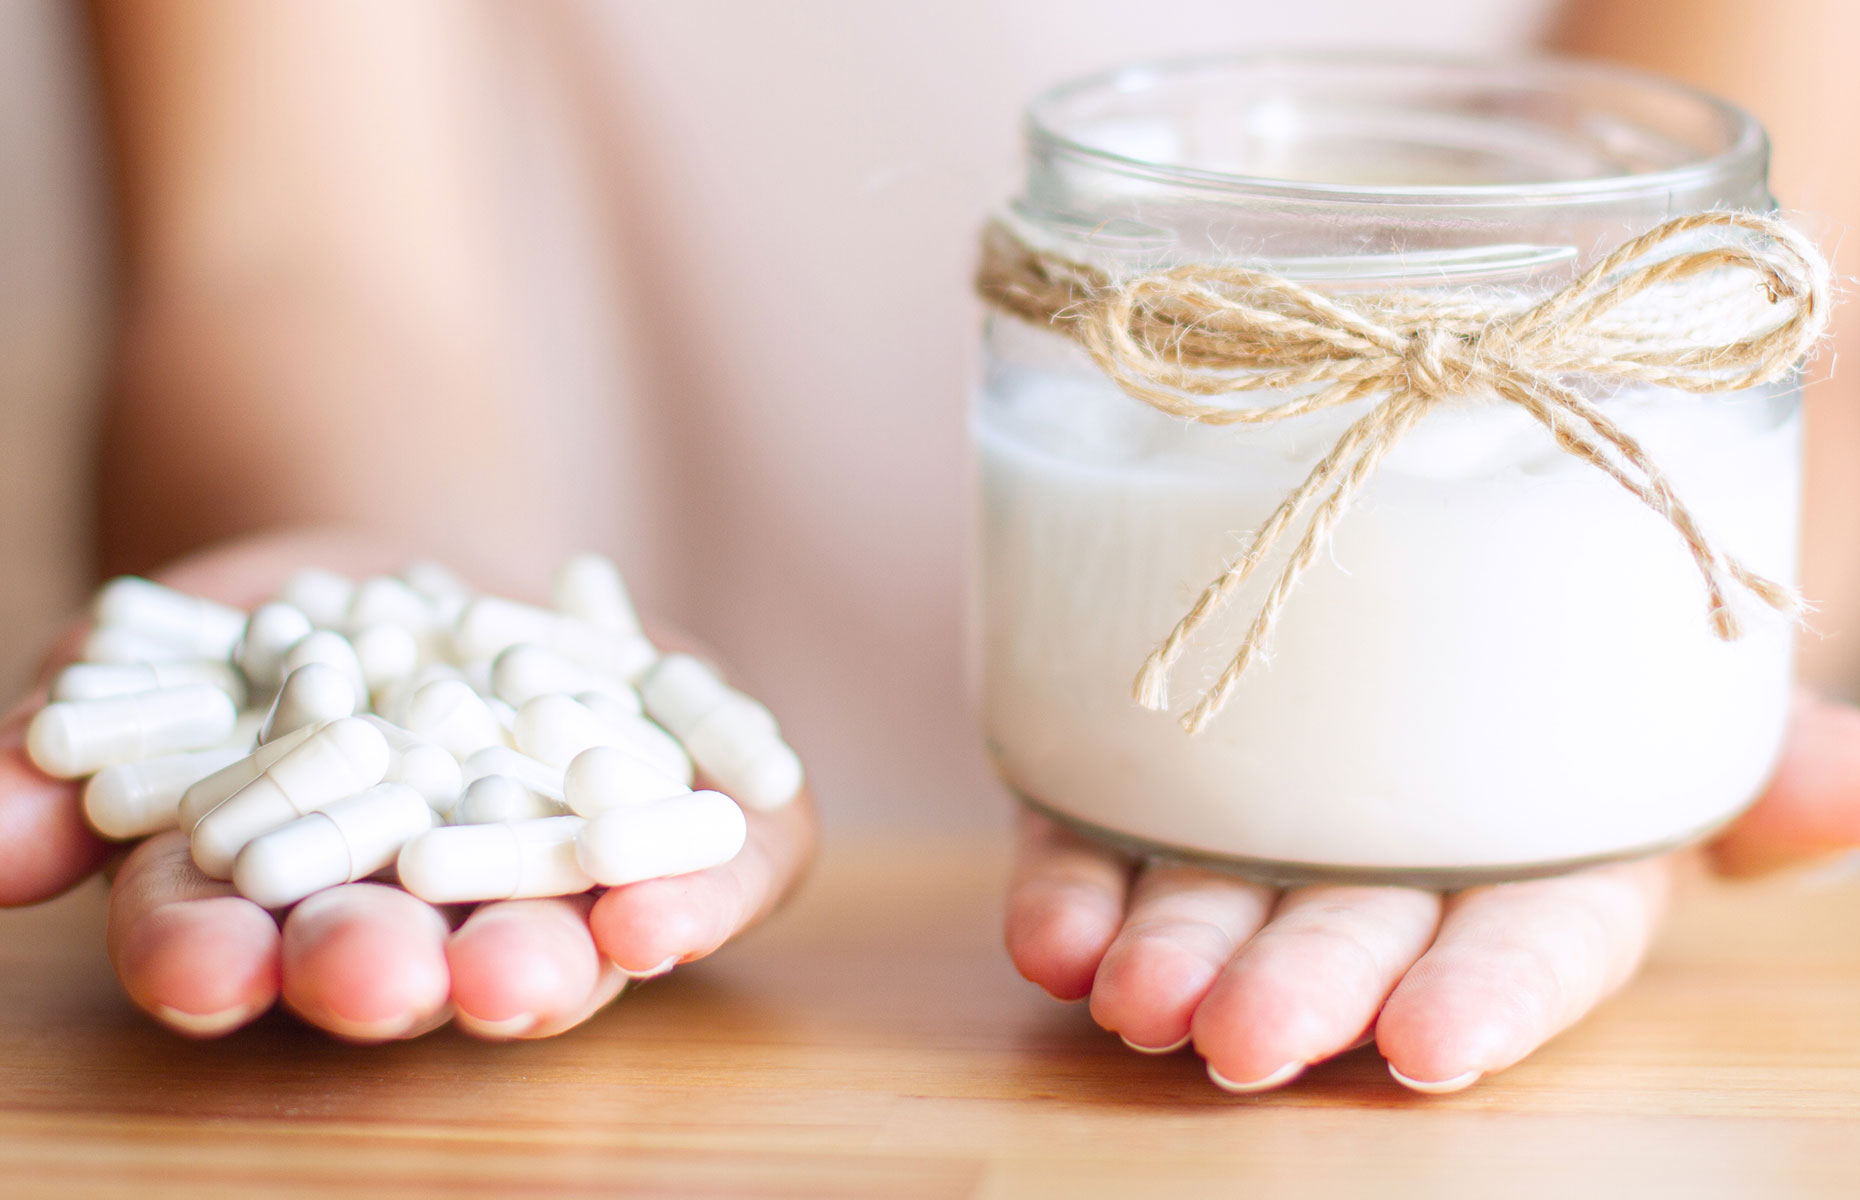 Yogurt pills and yogurt (Image: Monstar Studio/Shutterstock)